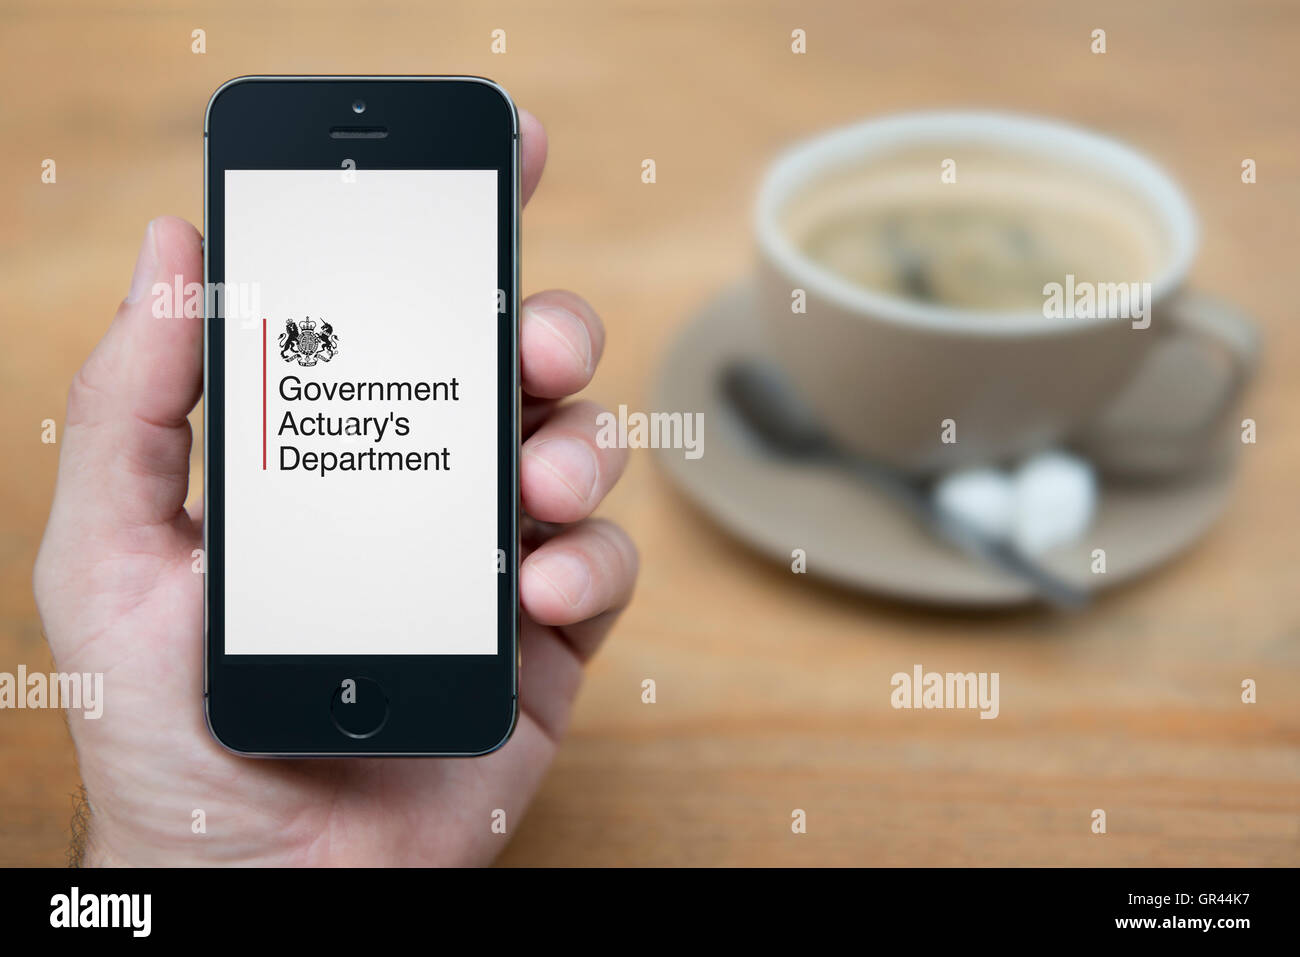 Un homme se penche sur son iPhone qui affiche le Government Actuary's Department du Royaume-Uni crest (usage éditorial uniquement). Banque D'Images